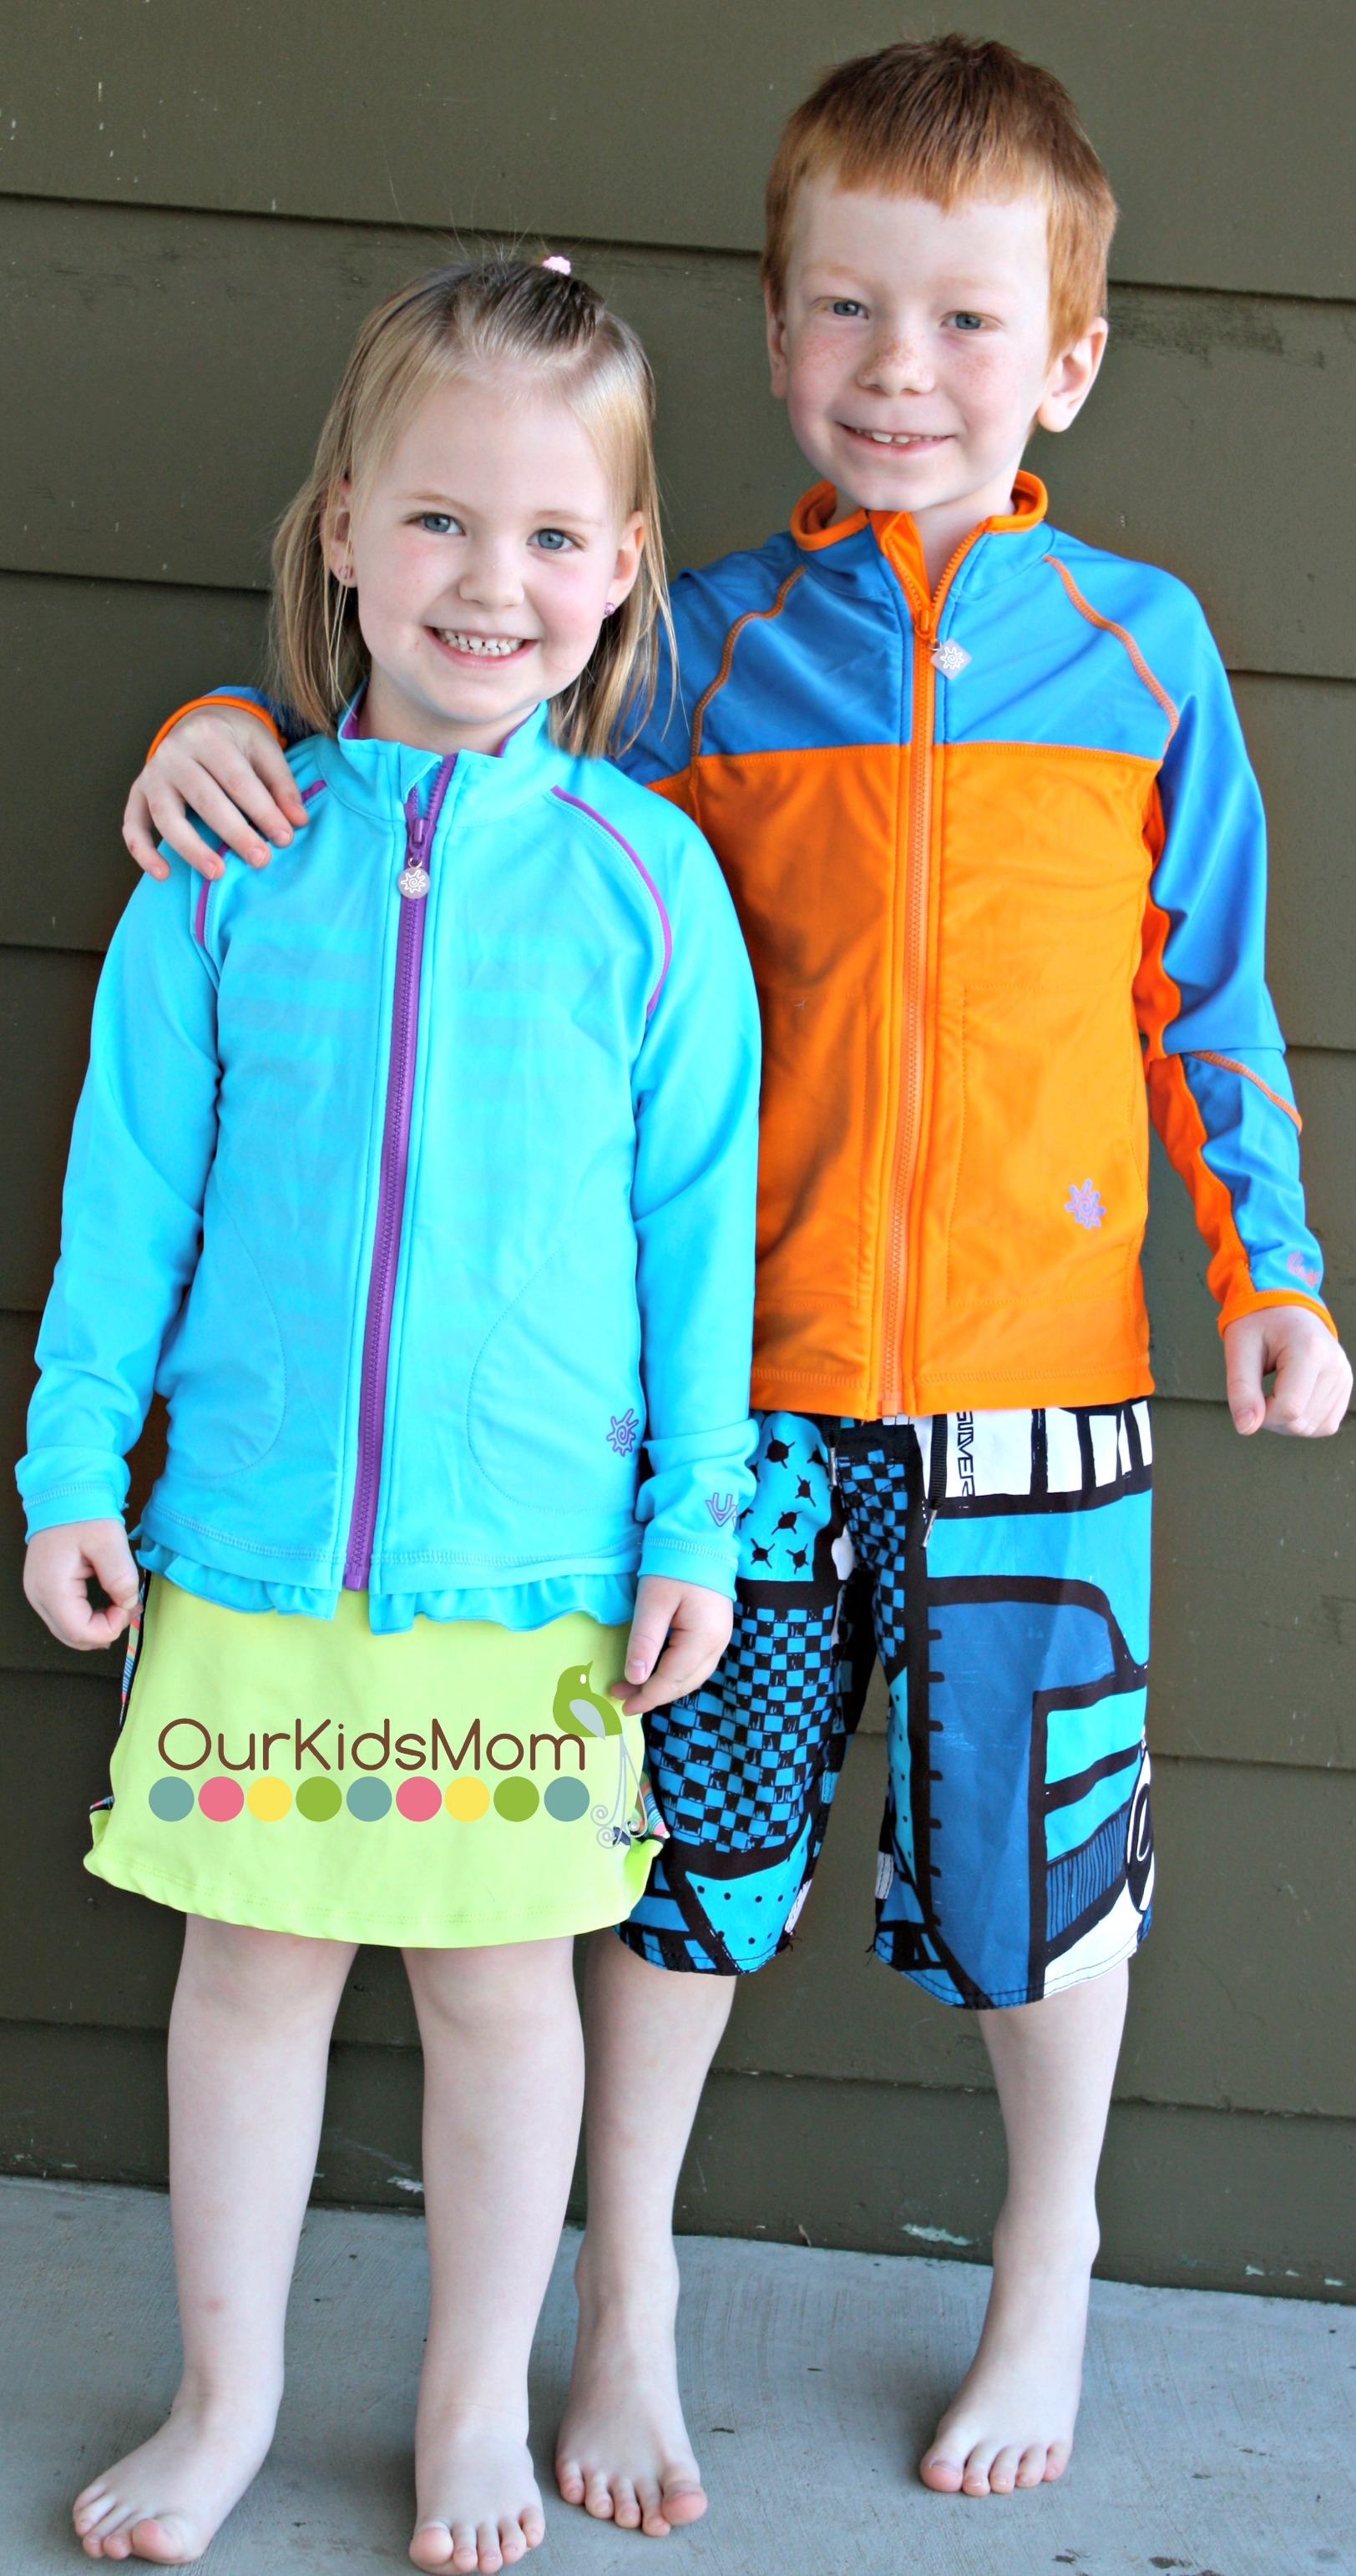 Kids in their UVSkinz jackets